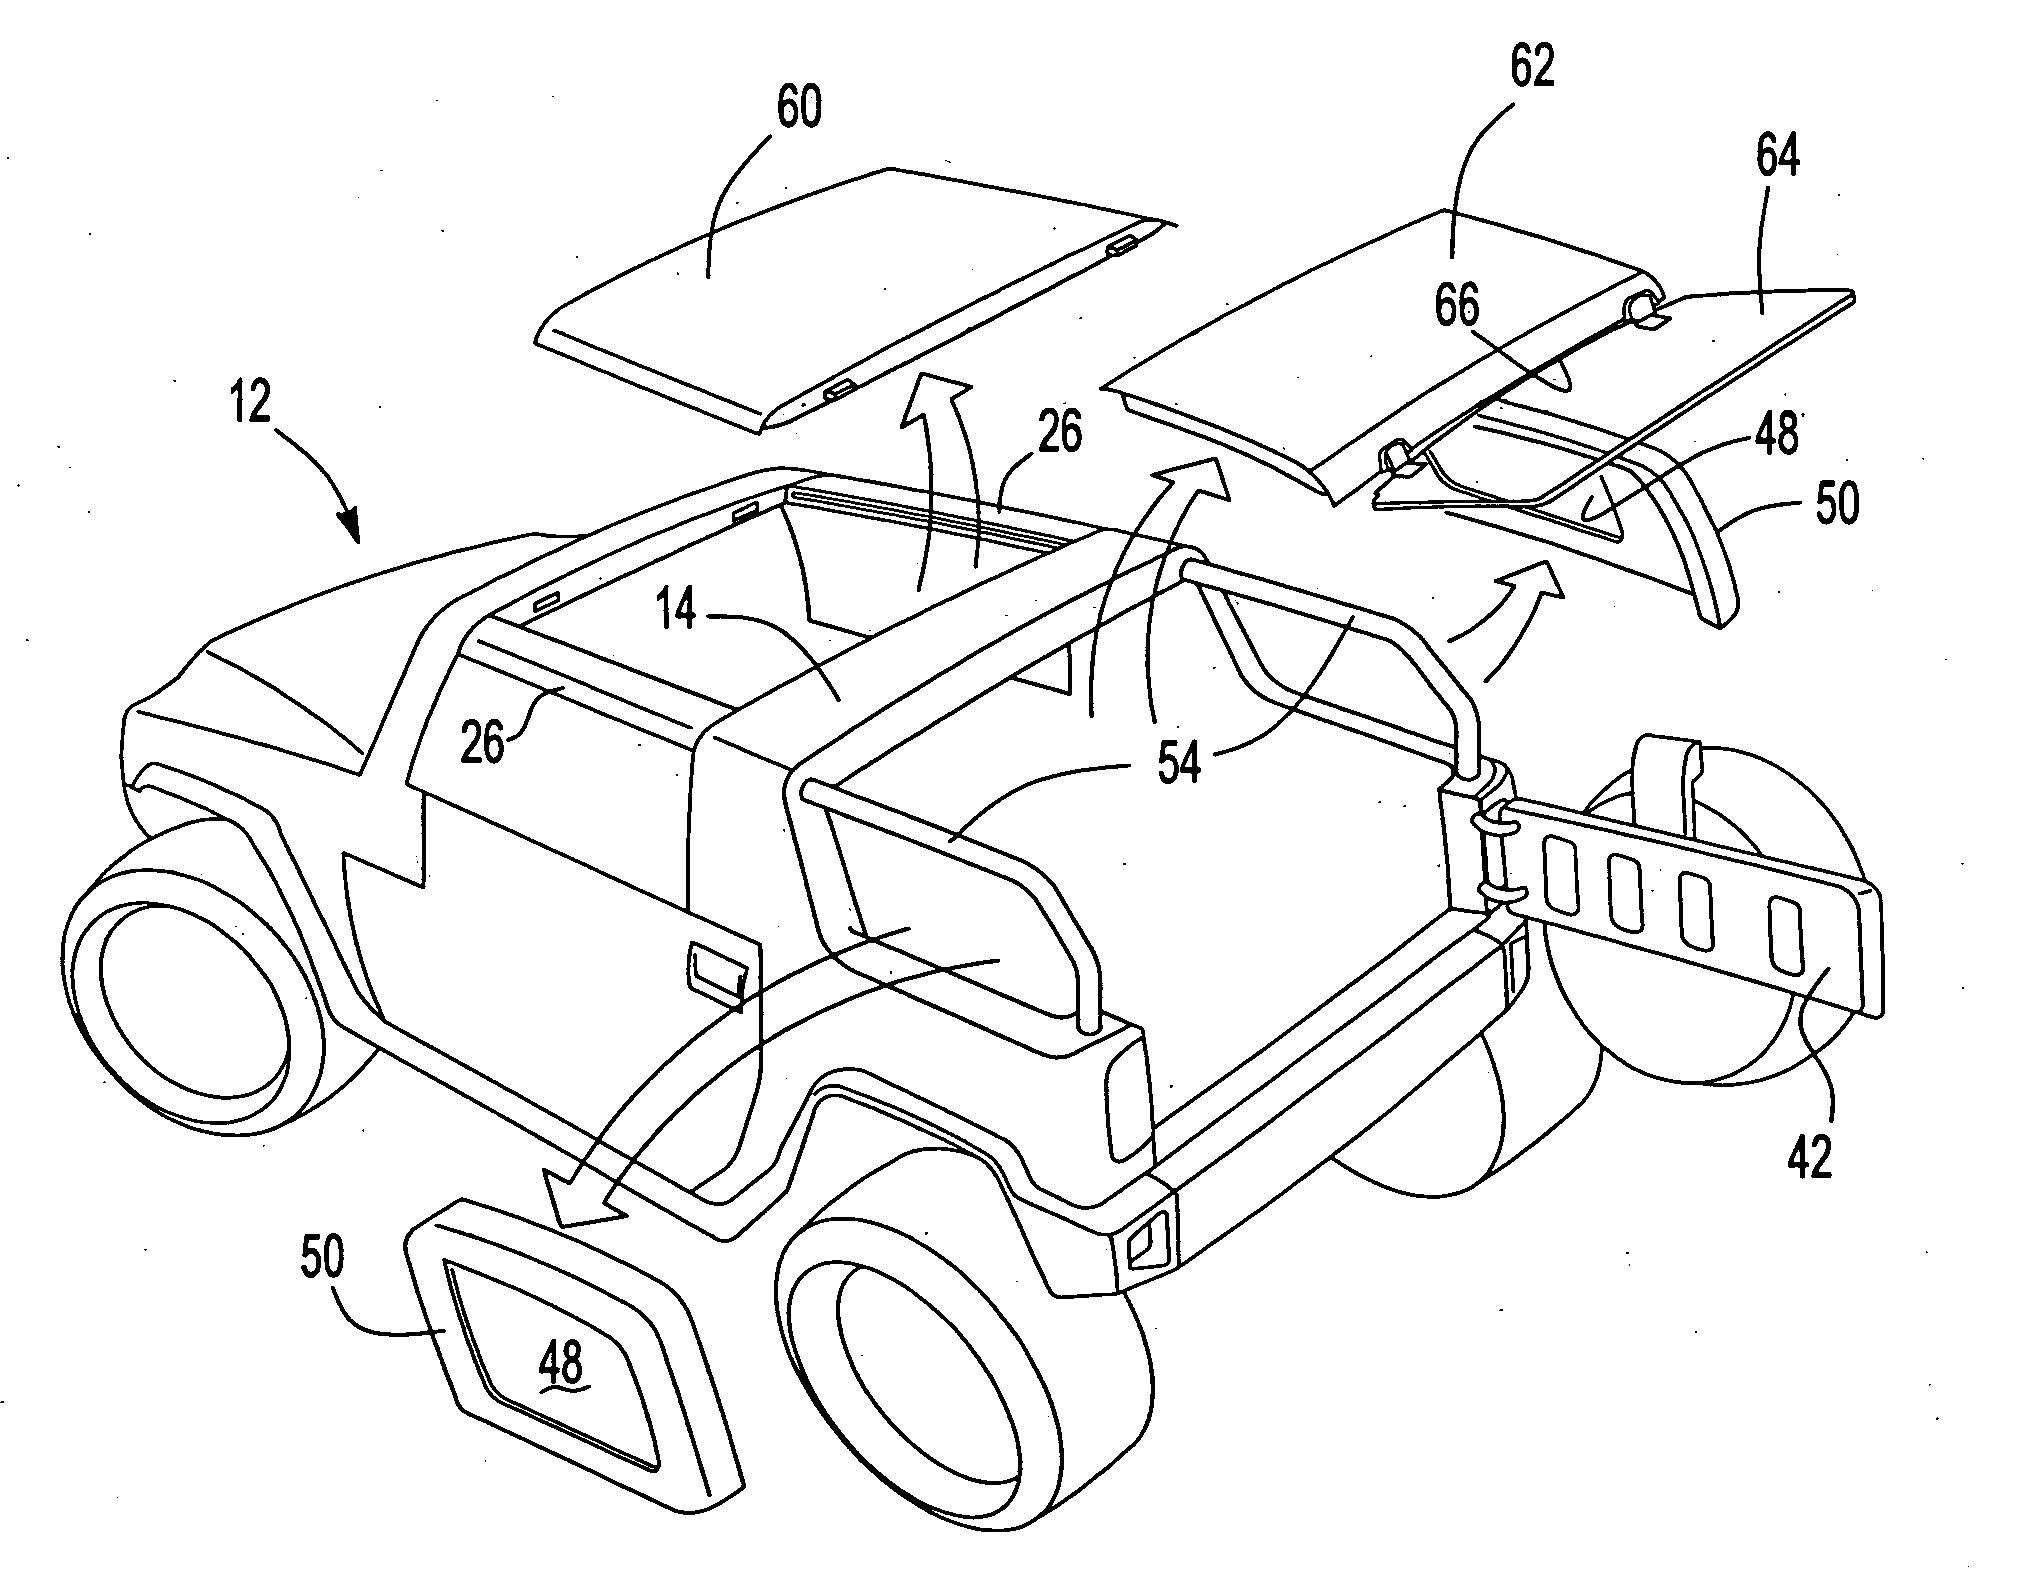 Modular convertible top